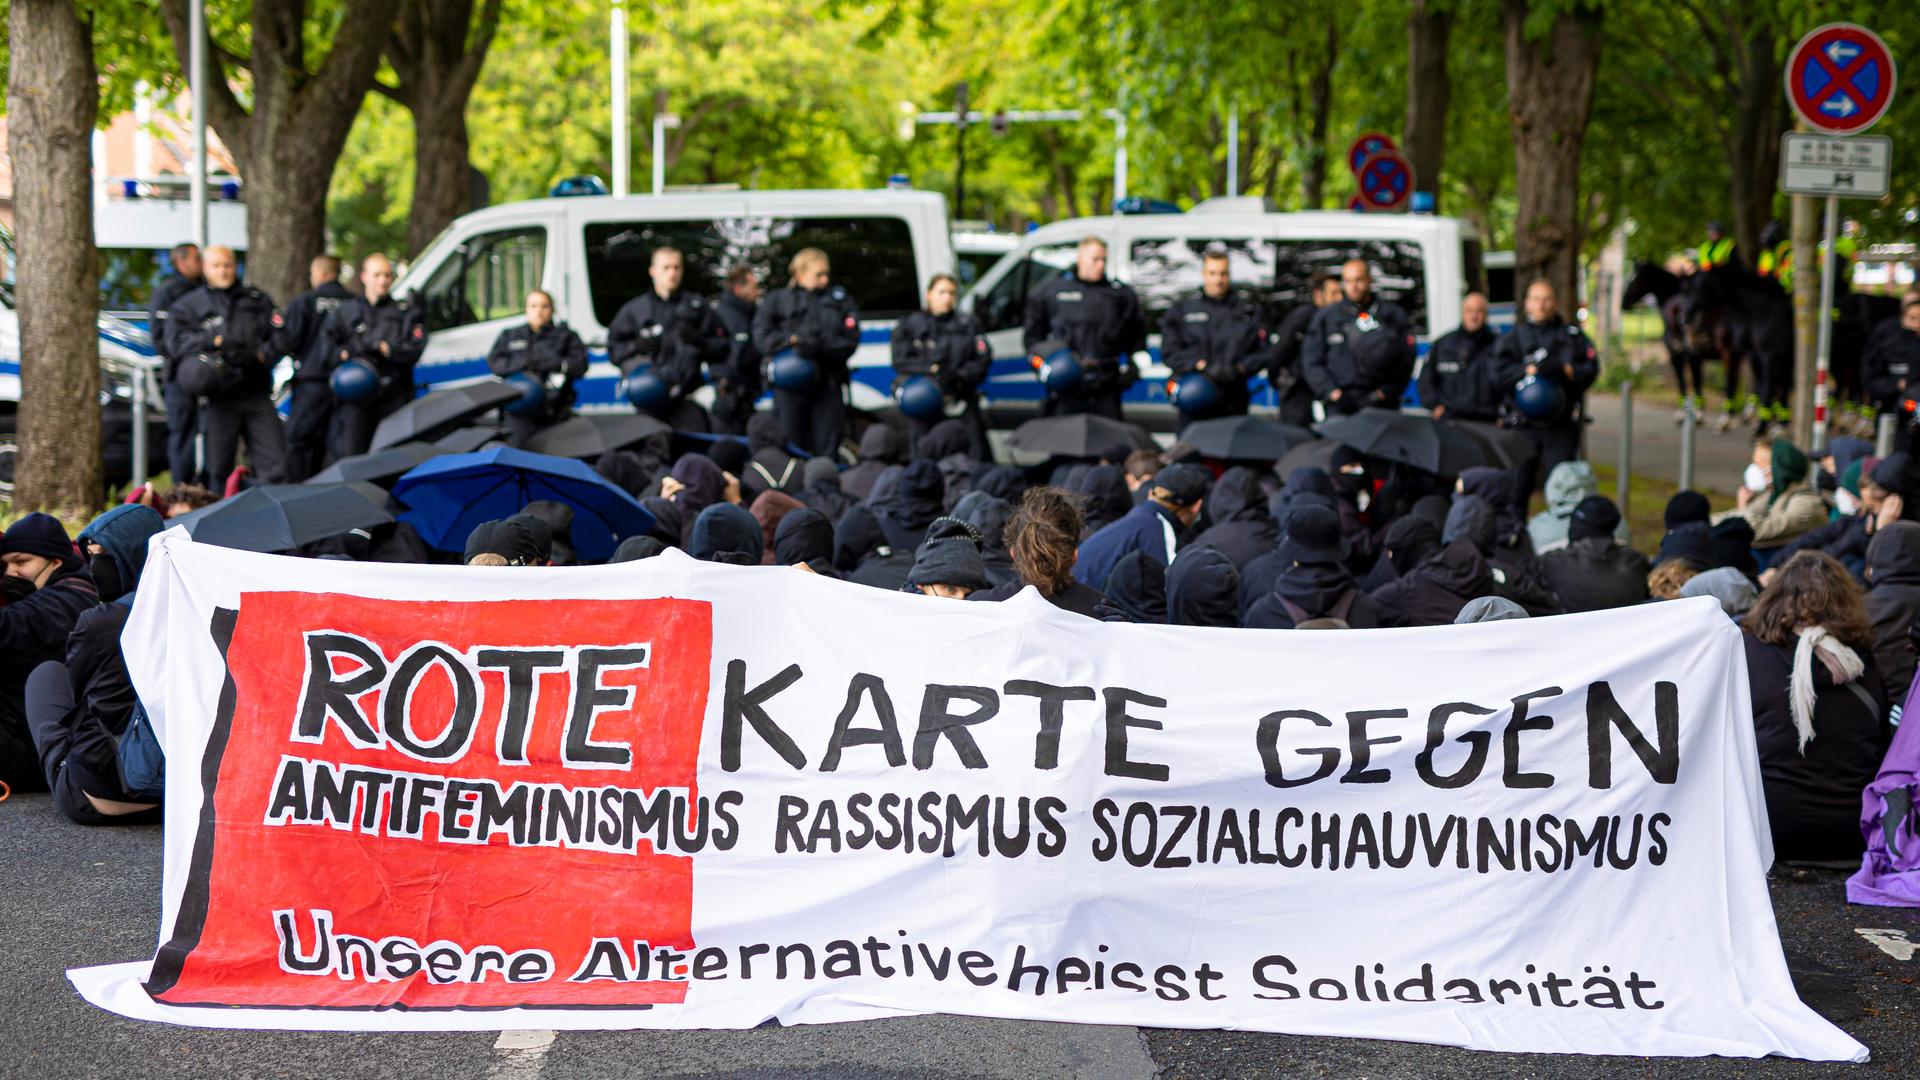 Demonstranten halten eine Sitzblockade ab und haben ein Banner mit folgender Aufschrift aufgespannt: "Rote Karte gegen Antifeminismus Rassismus Sozialchauvinismus - unsere Alternative heißt Solidarität"